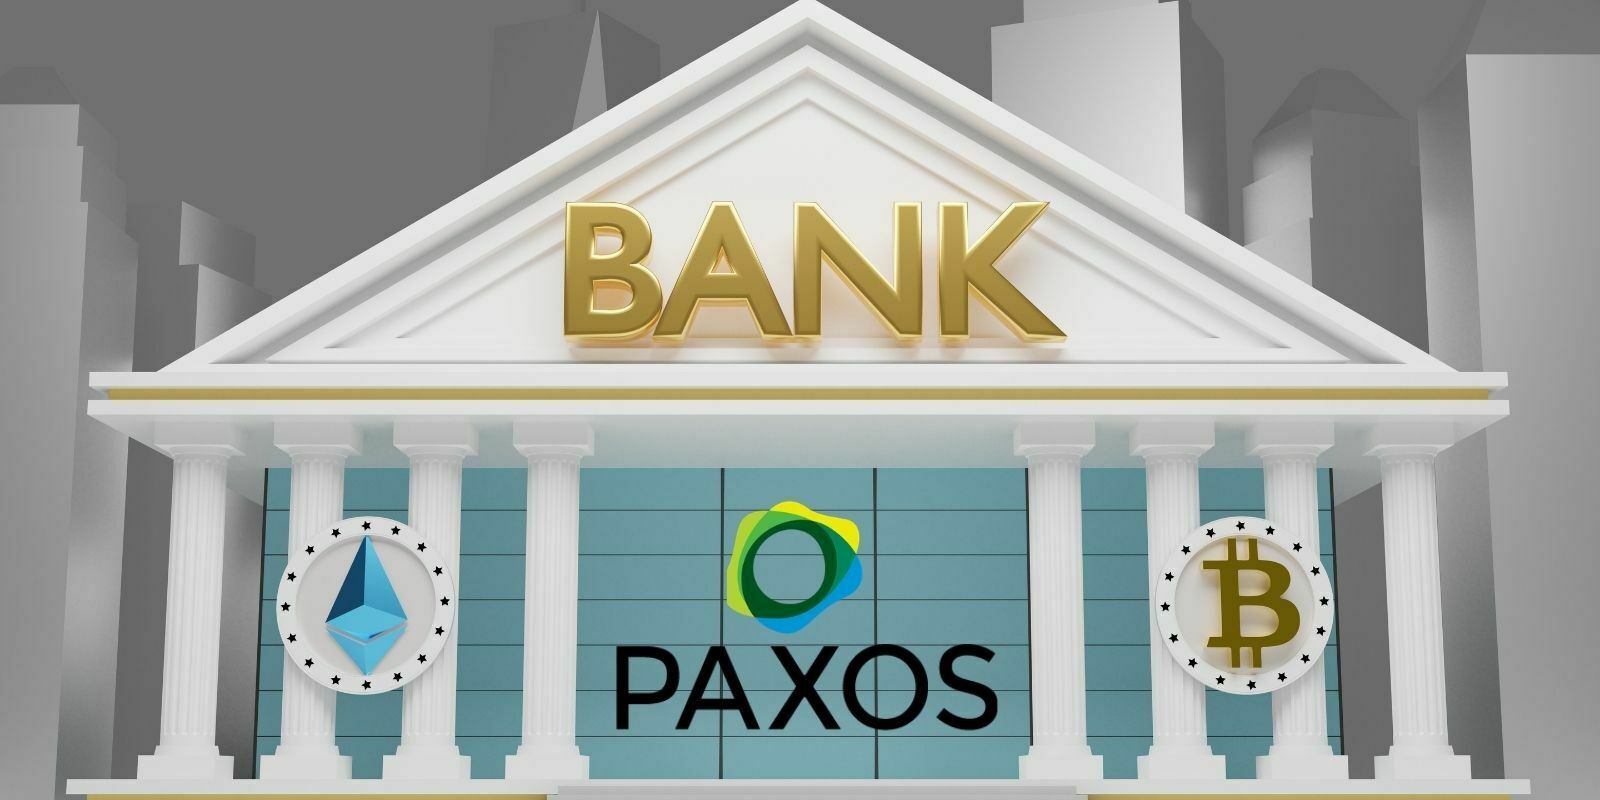 La société Paxos obtient une licence bancaire pour créer une crypto-banque